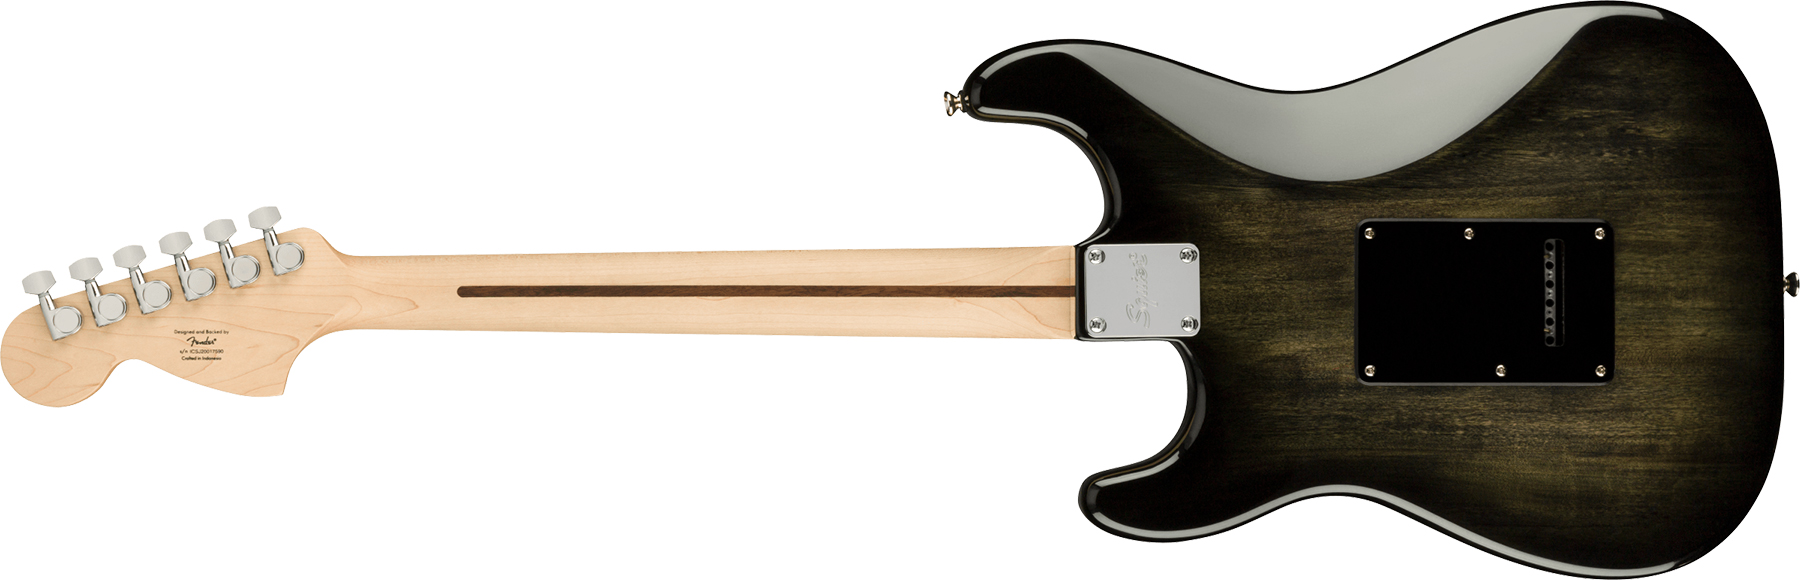 Squier Strat Affinity Fmt Hss 2021 Trem Mn - Black Burst - Elektrische gitaar in Str-vorm - Variation 1